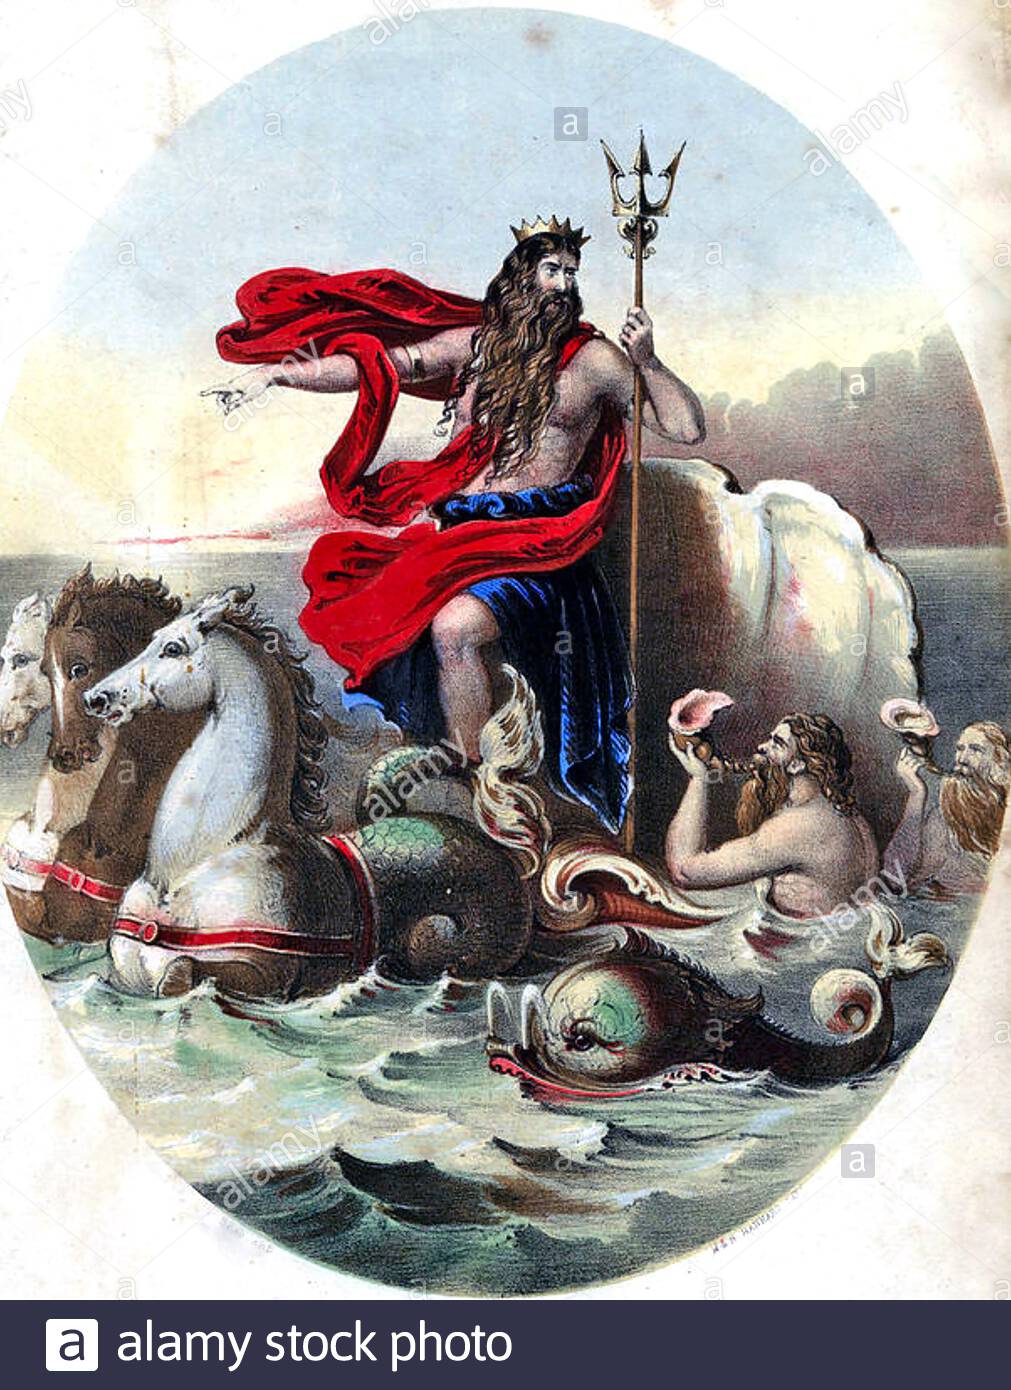 neptuno-dios-romano-del-mar-en-la-portada-de-la-partitura-victoriana-2c72ktm.jpg